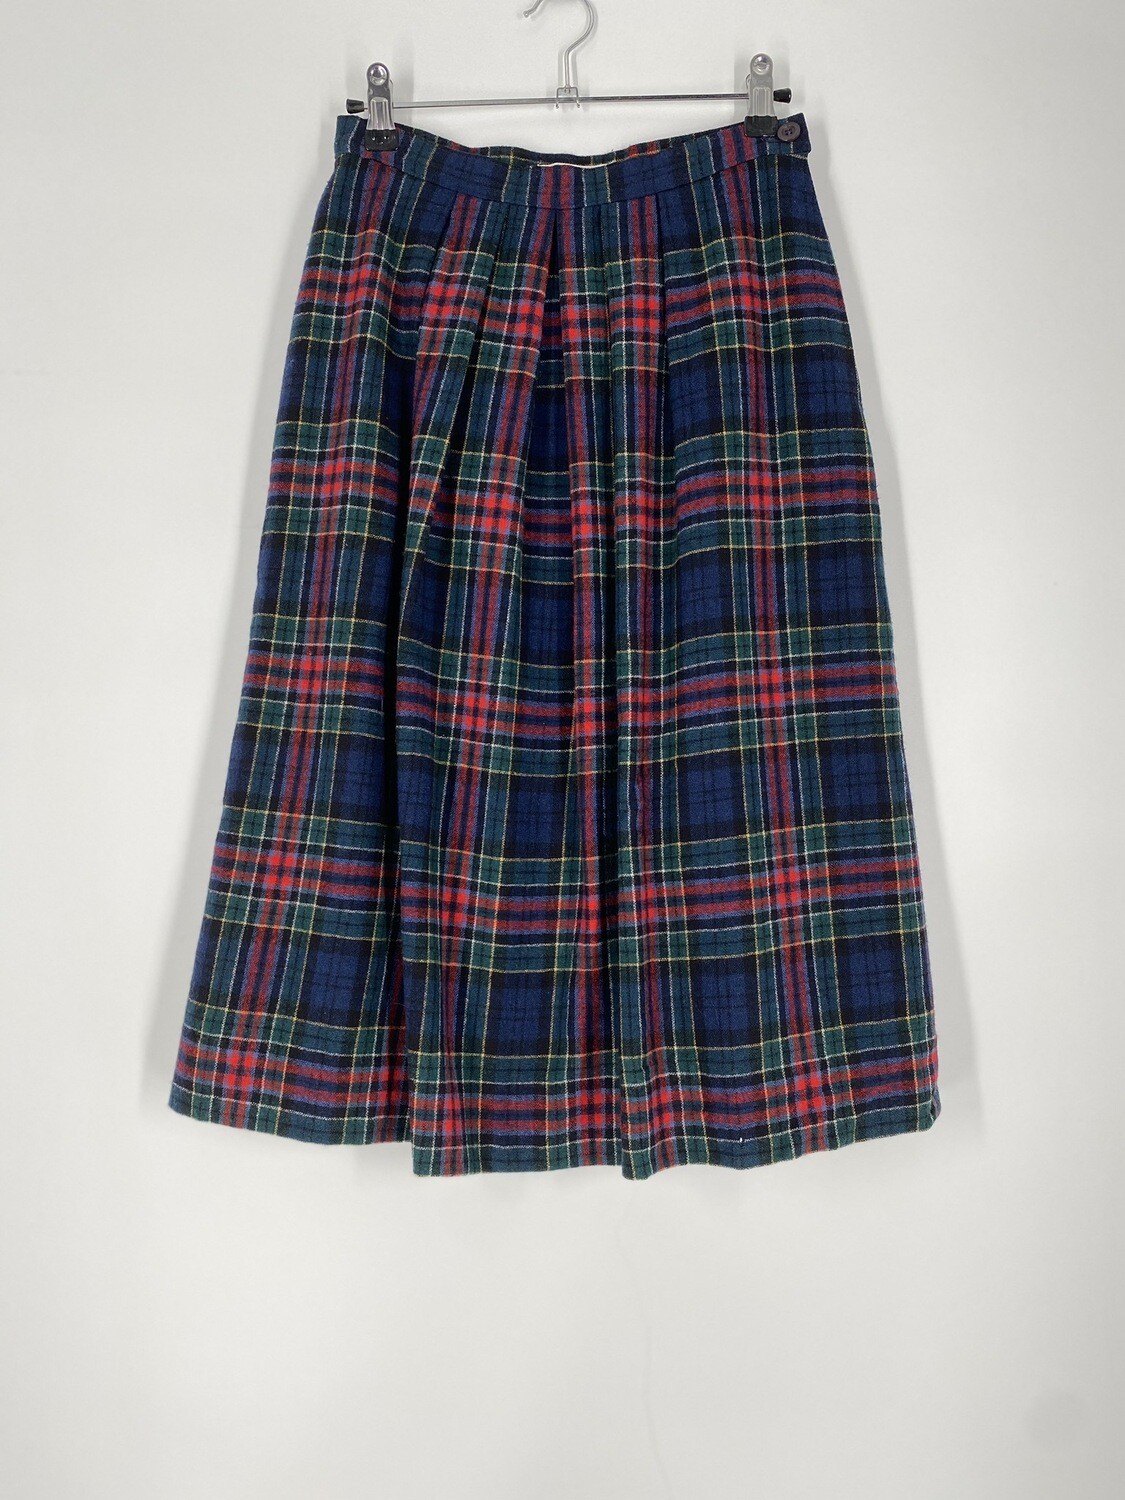 Authentic Allison Tartan Plaid Skirt Size M